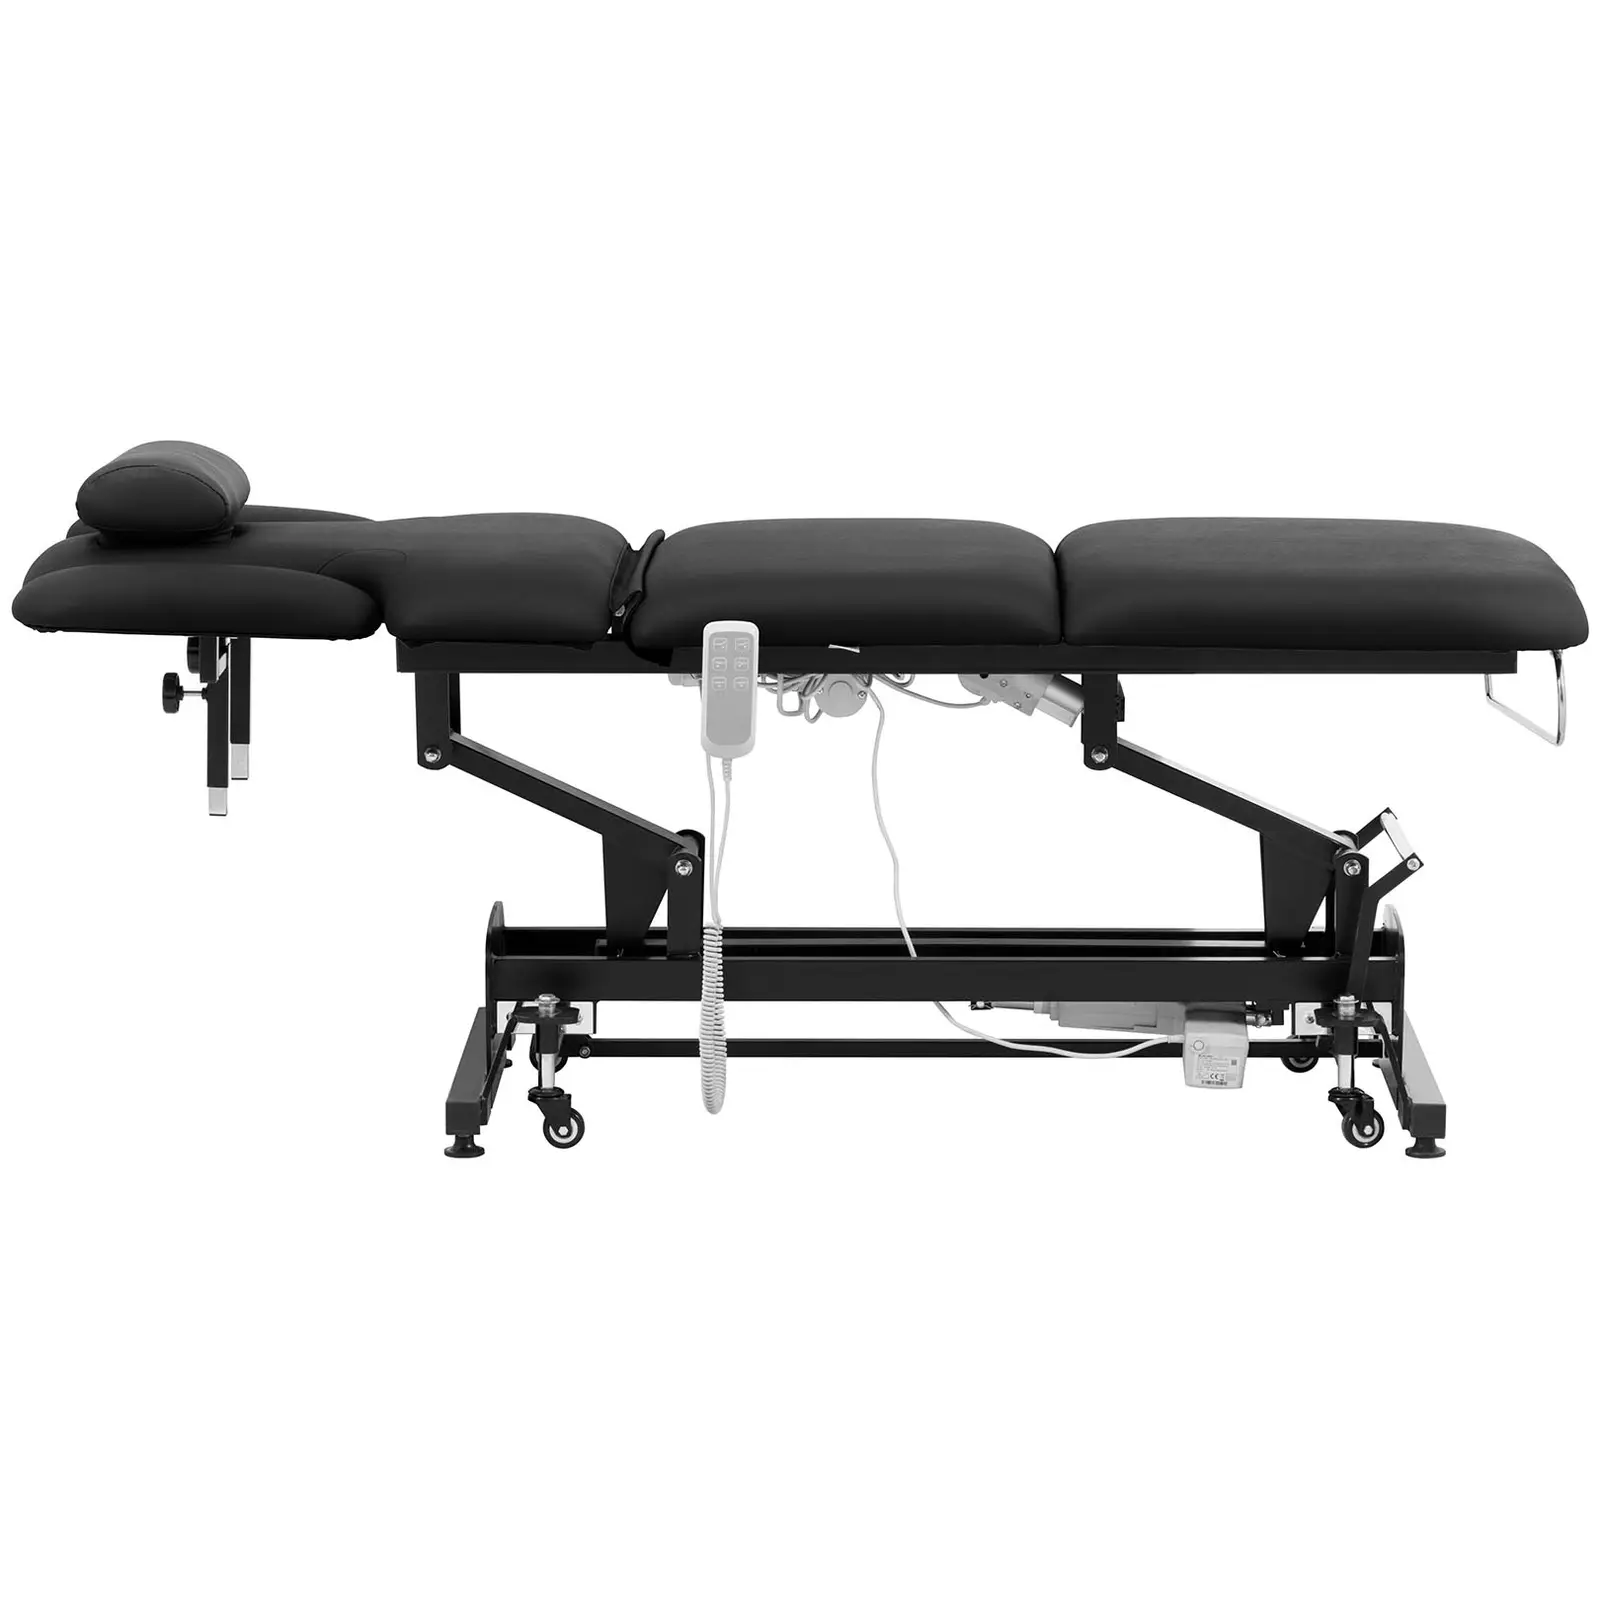 Table de massage électrique - 3 moteurs - 250 kg - Noir